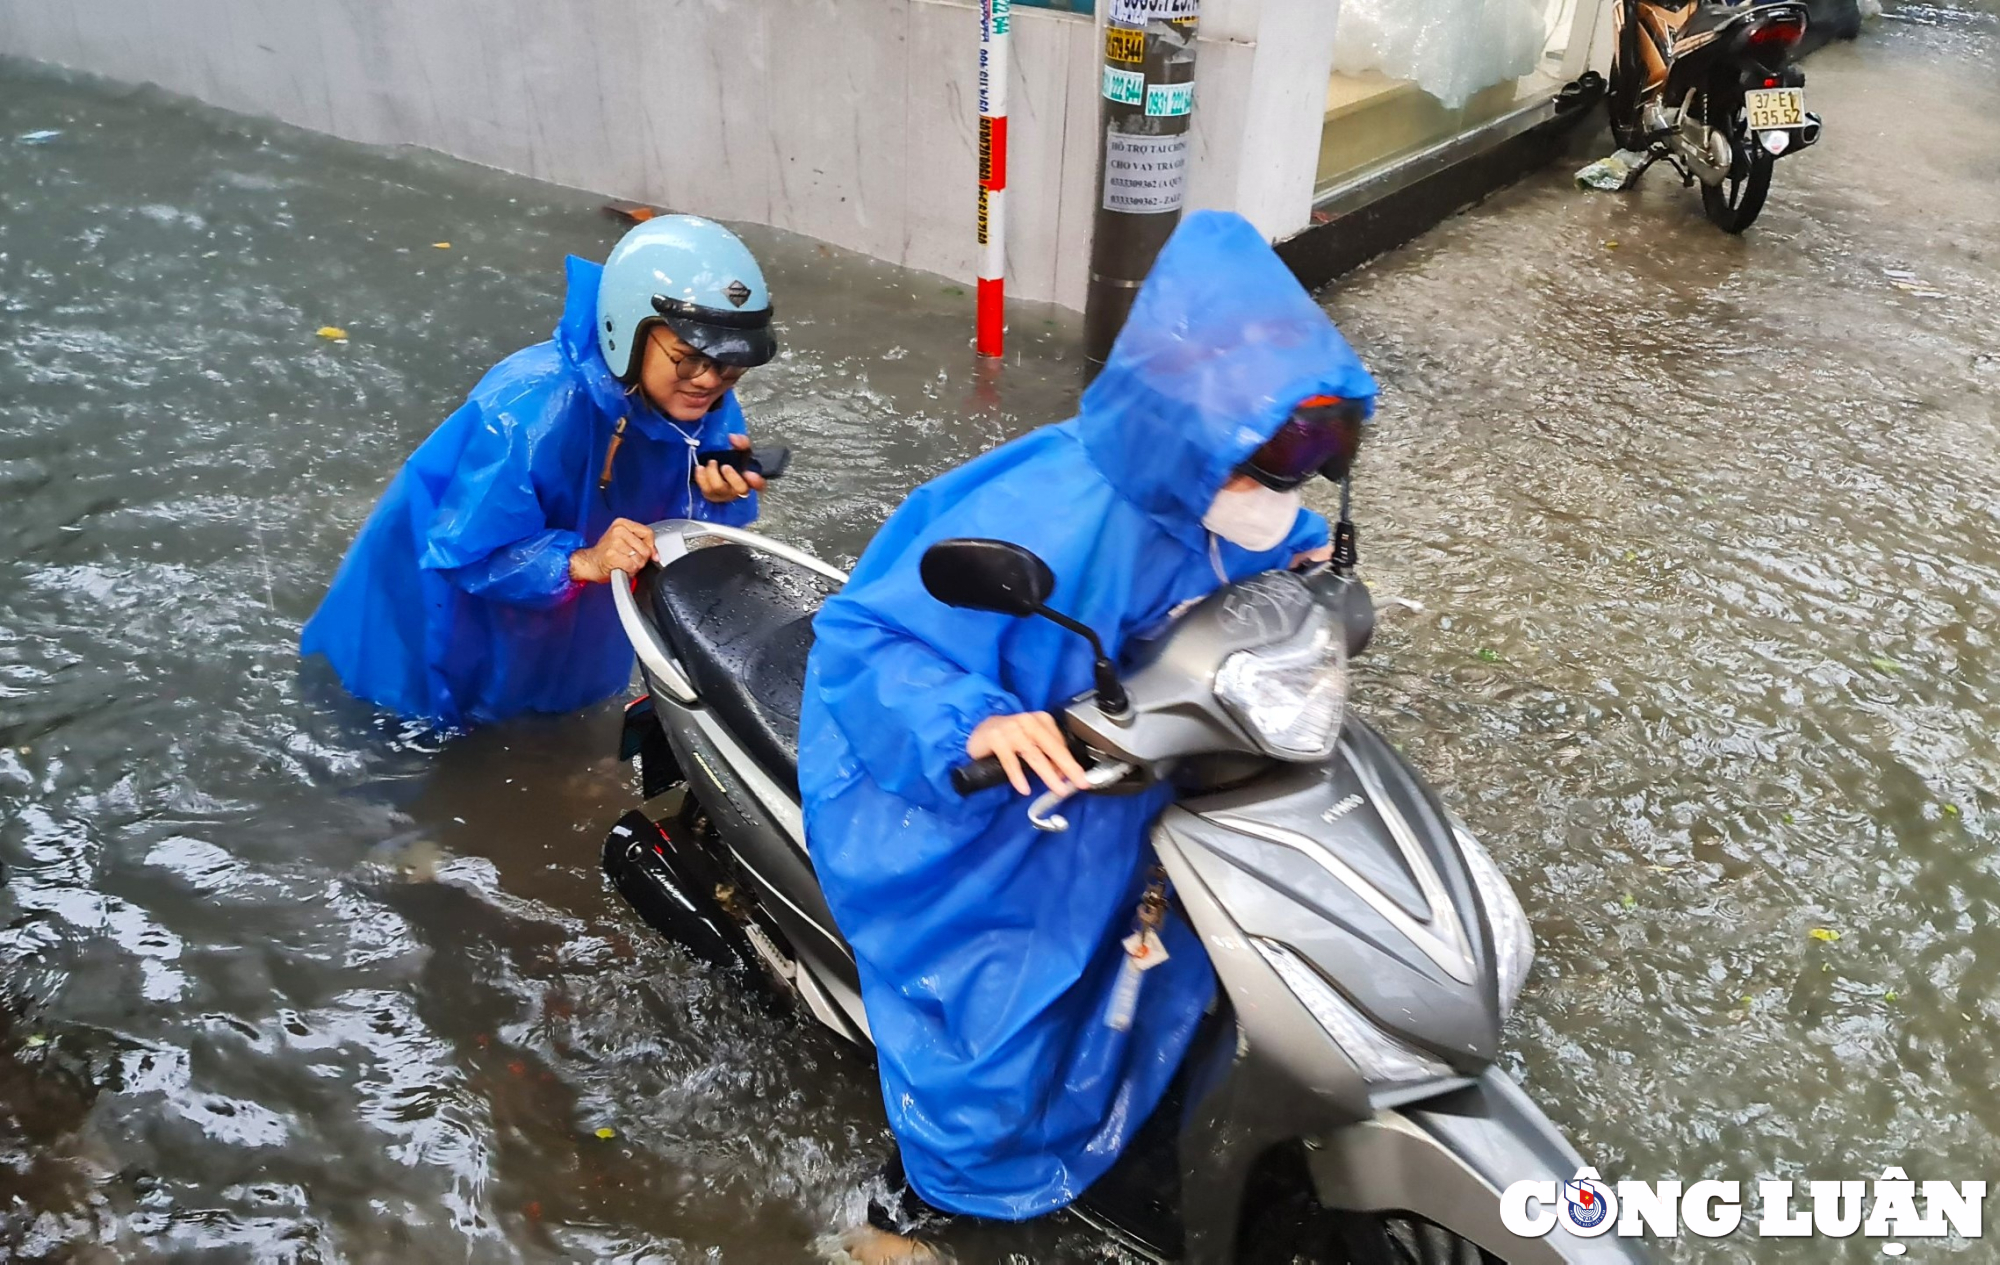             Đường phố bị ngập sâu, người Đà Nẵng bì bõm đẩy xe trong biển nước    